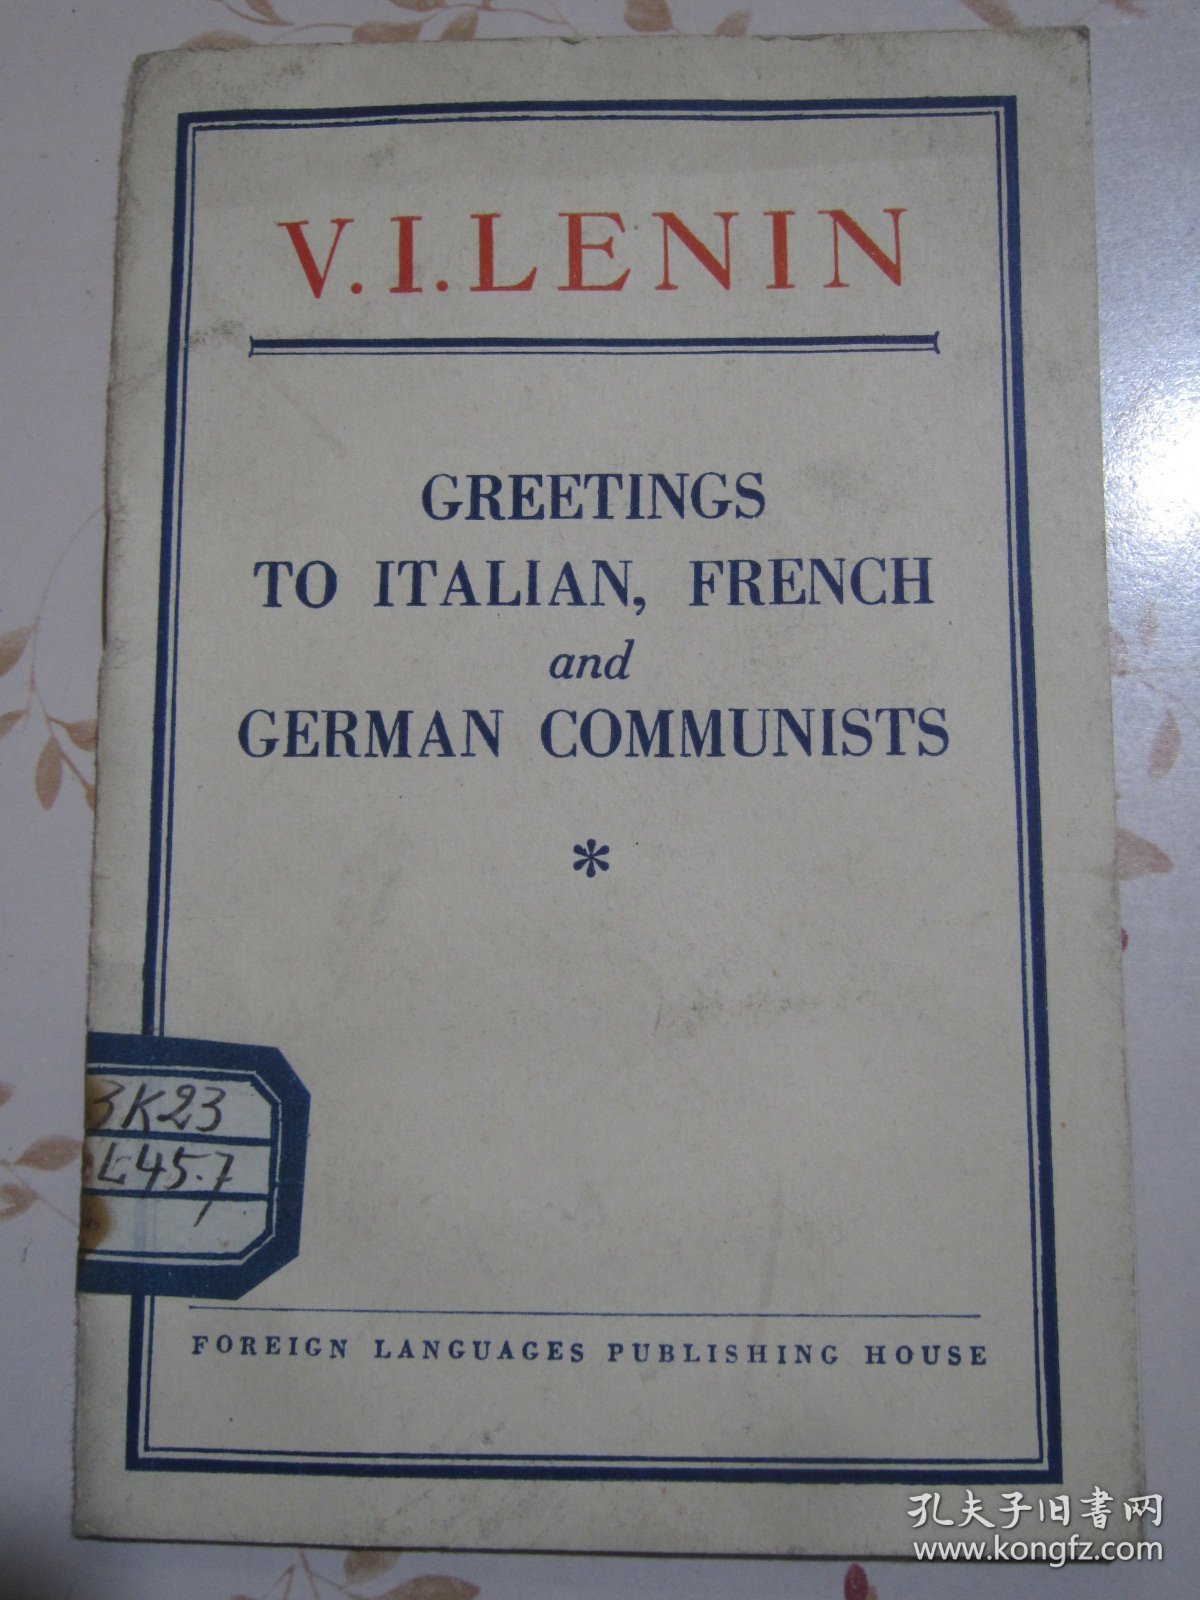 英文原版书 列宁《向意大利法国与德国共产党员致敬》